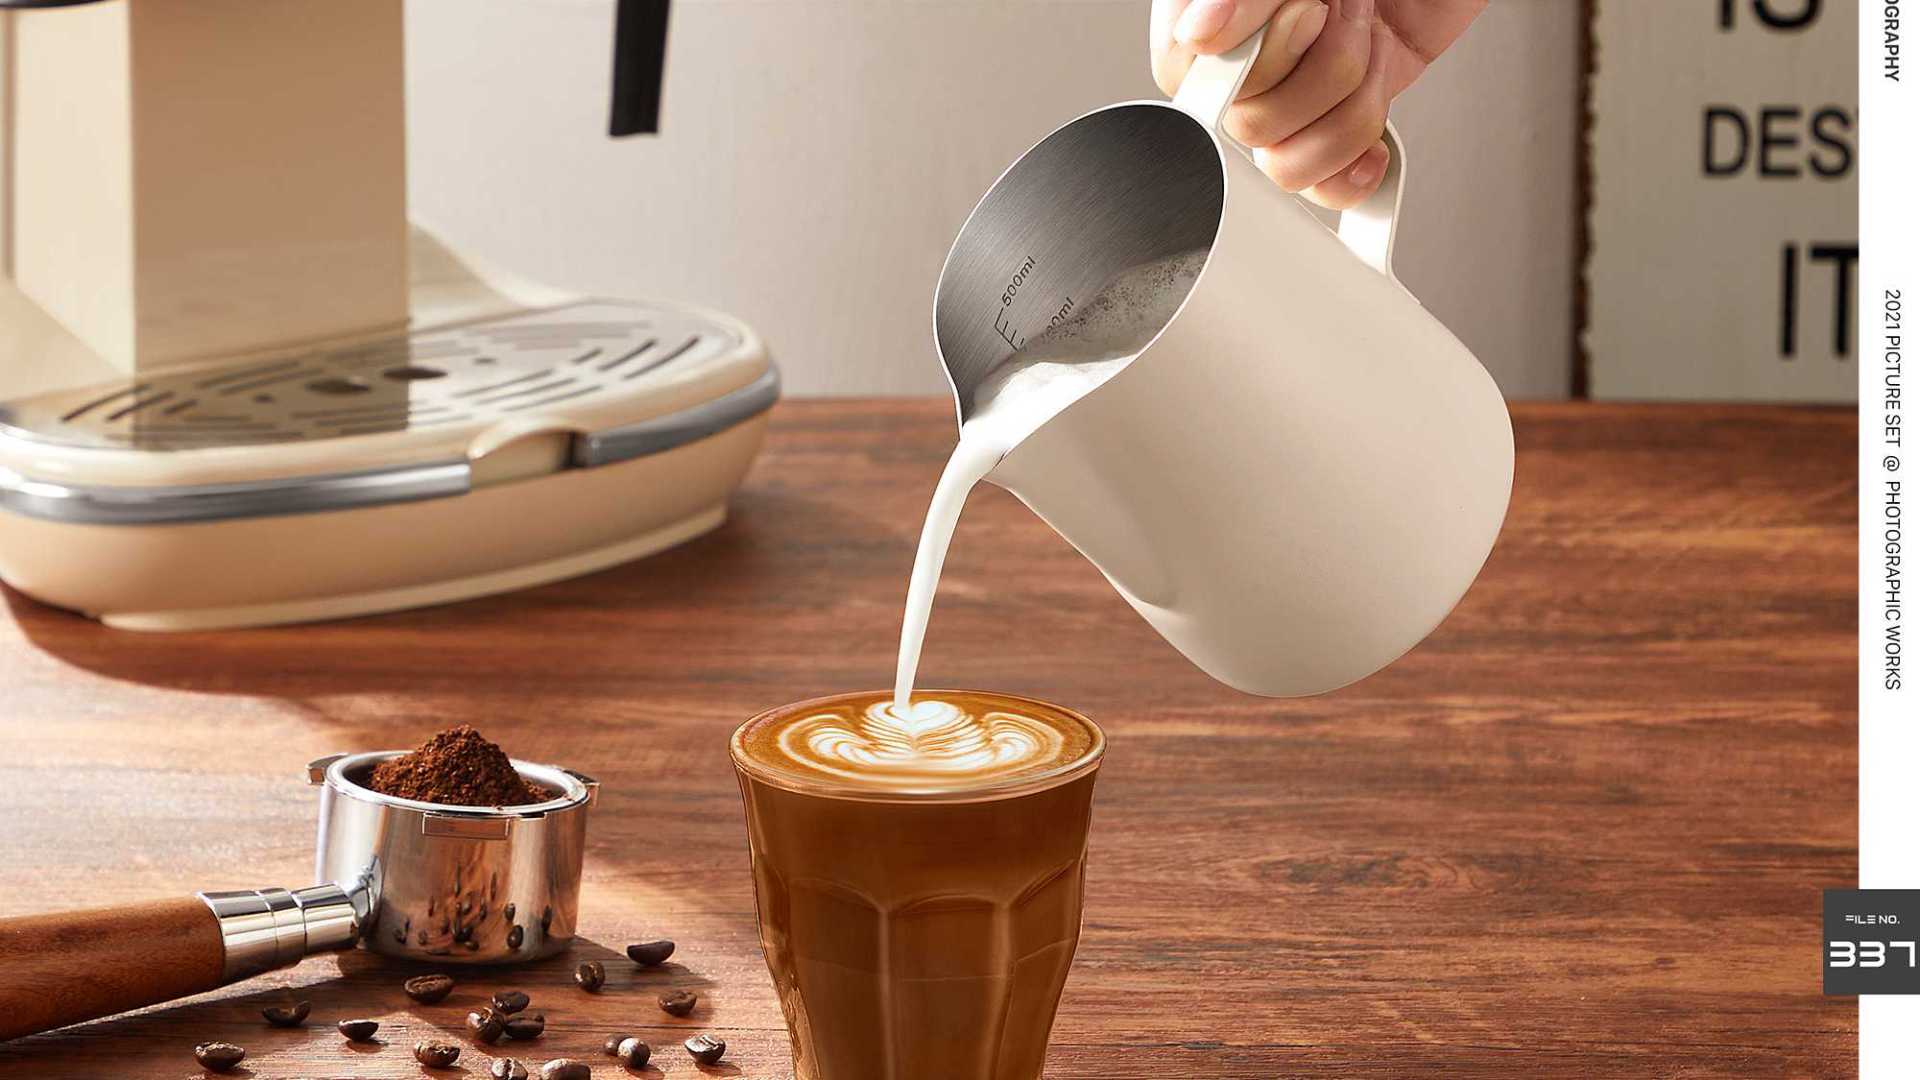 拉花杯 咖啡机奶泡杯器具 拉花缸 主图视频、东莞产品摄影